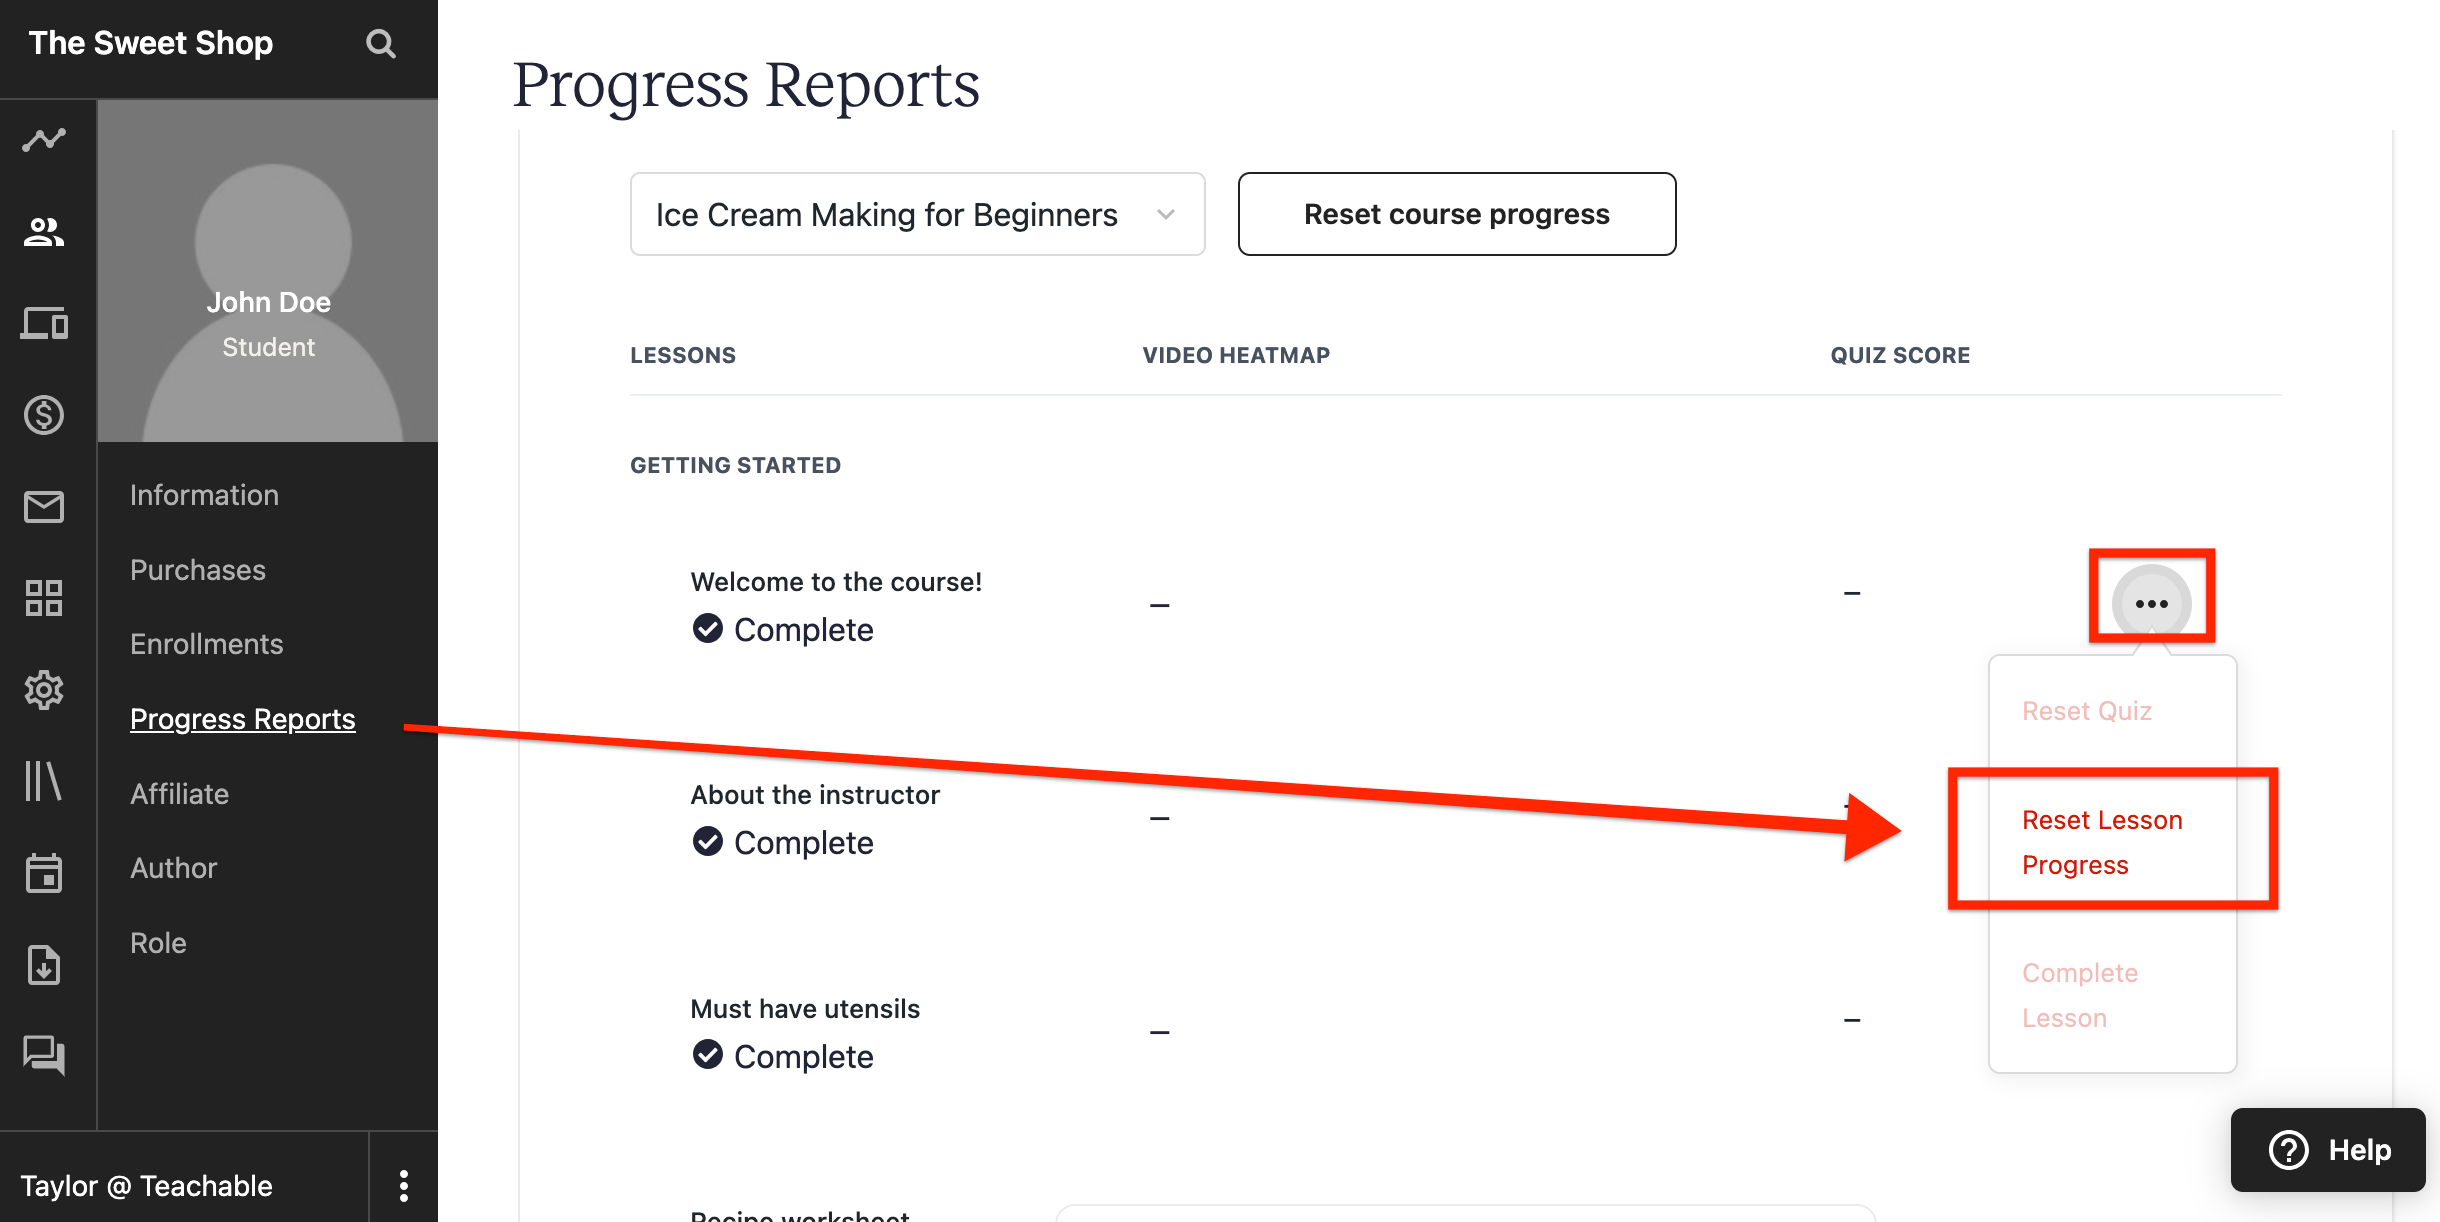 progress report - reset lesson progress.png